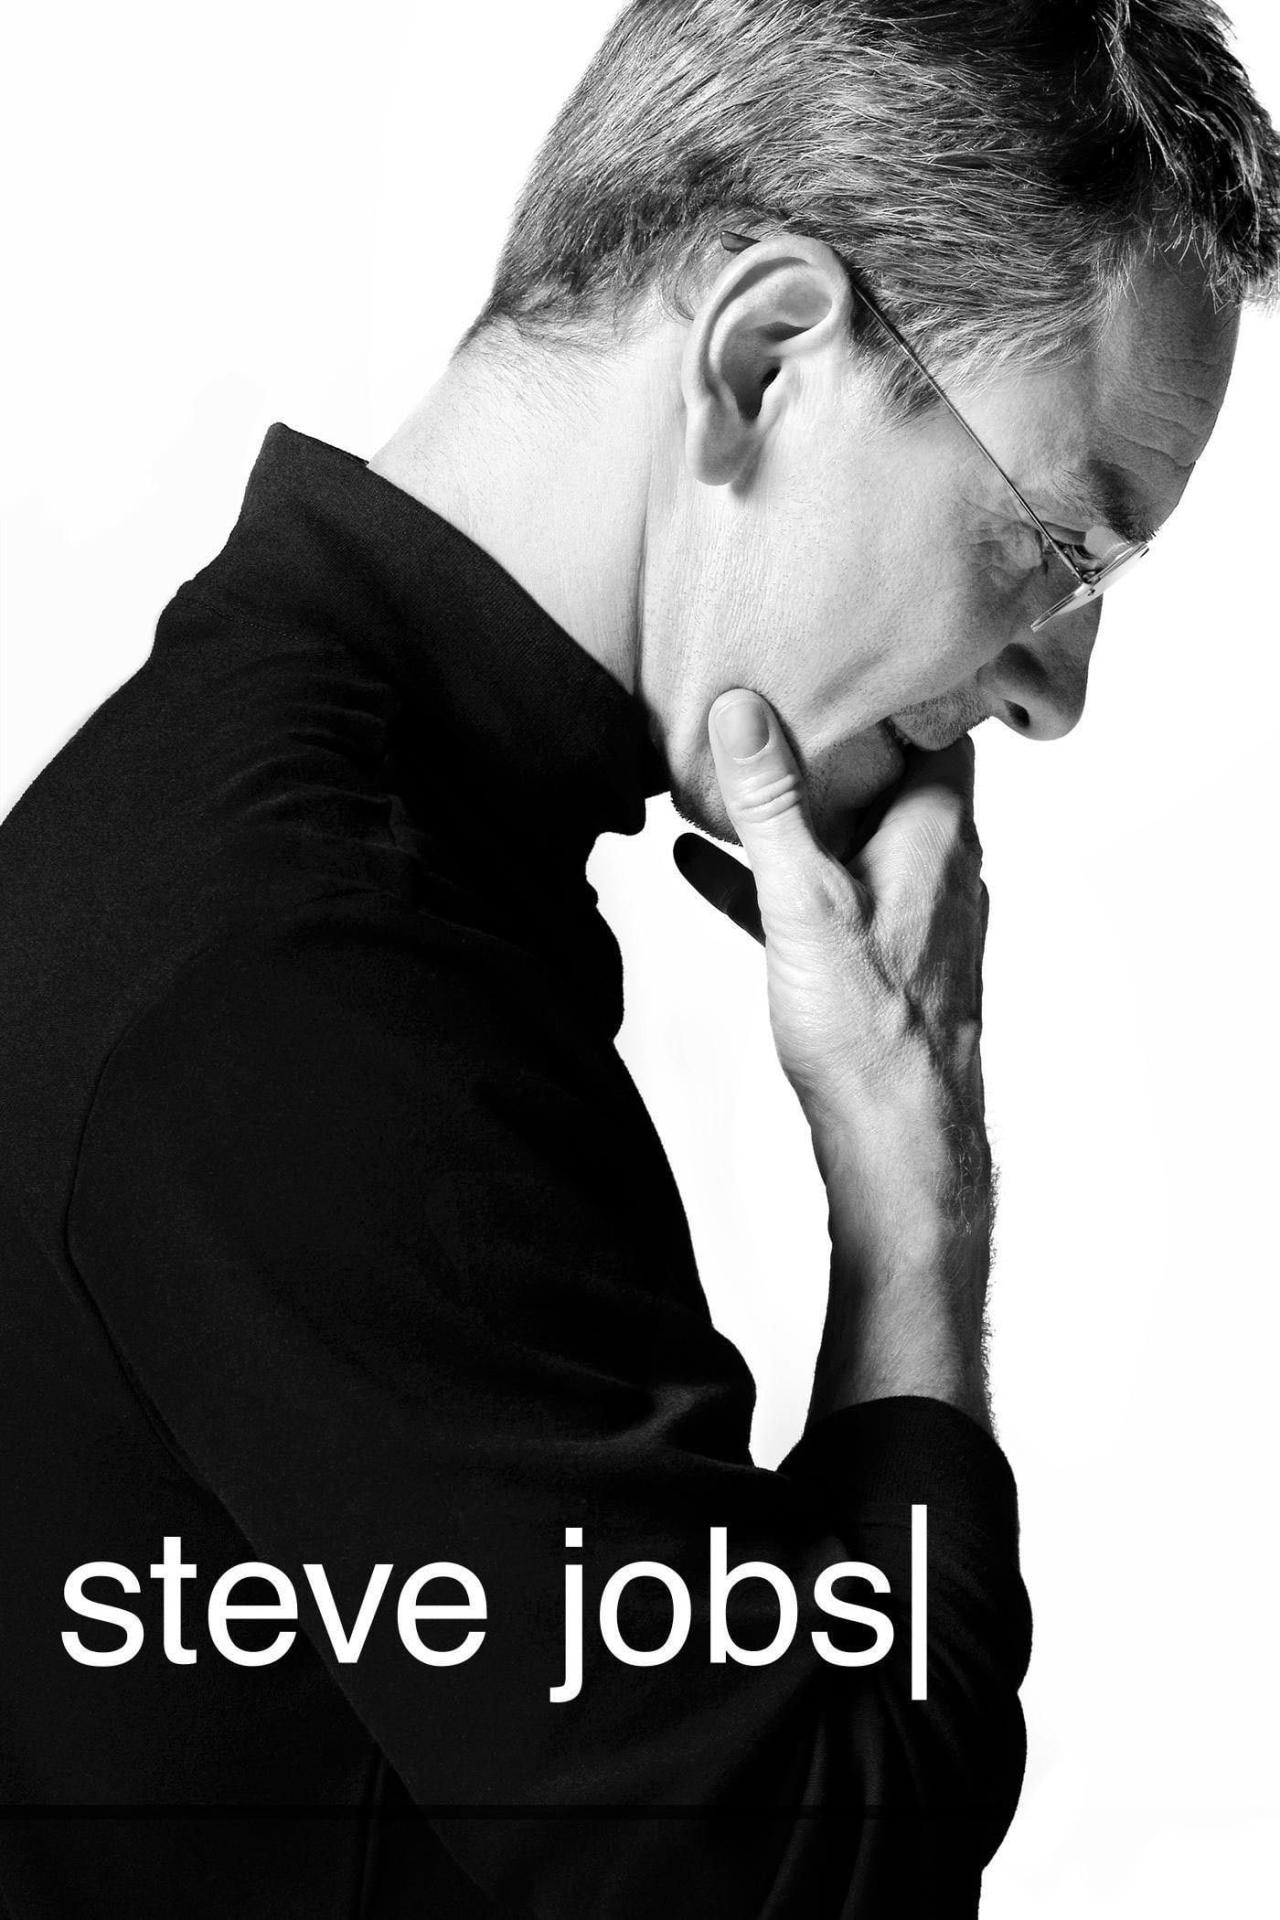 Steve Jobs est-il disponible sur Netflix ou autre ?